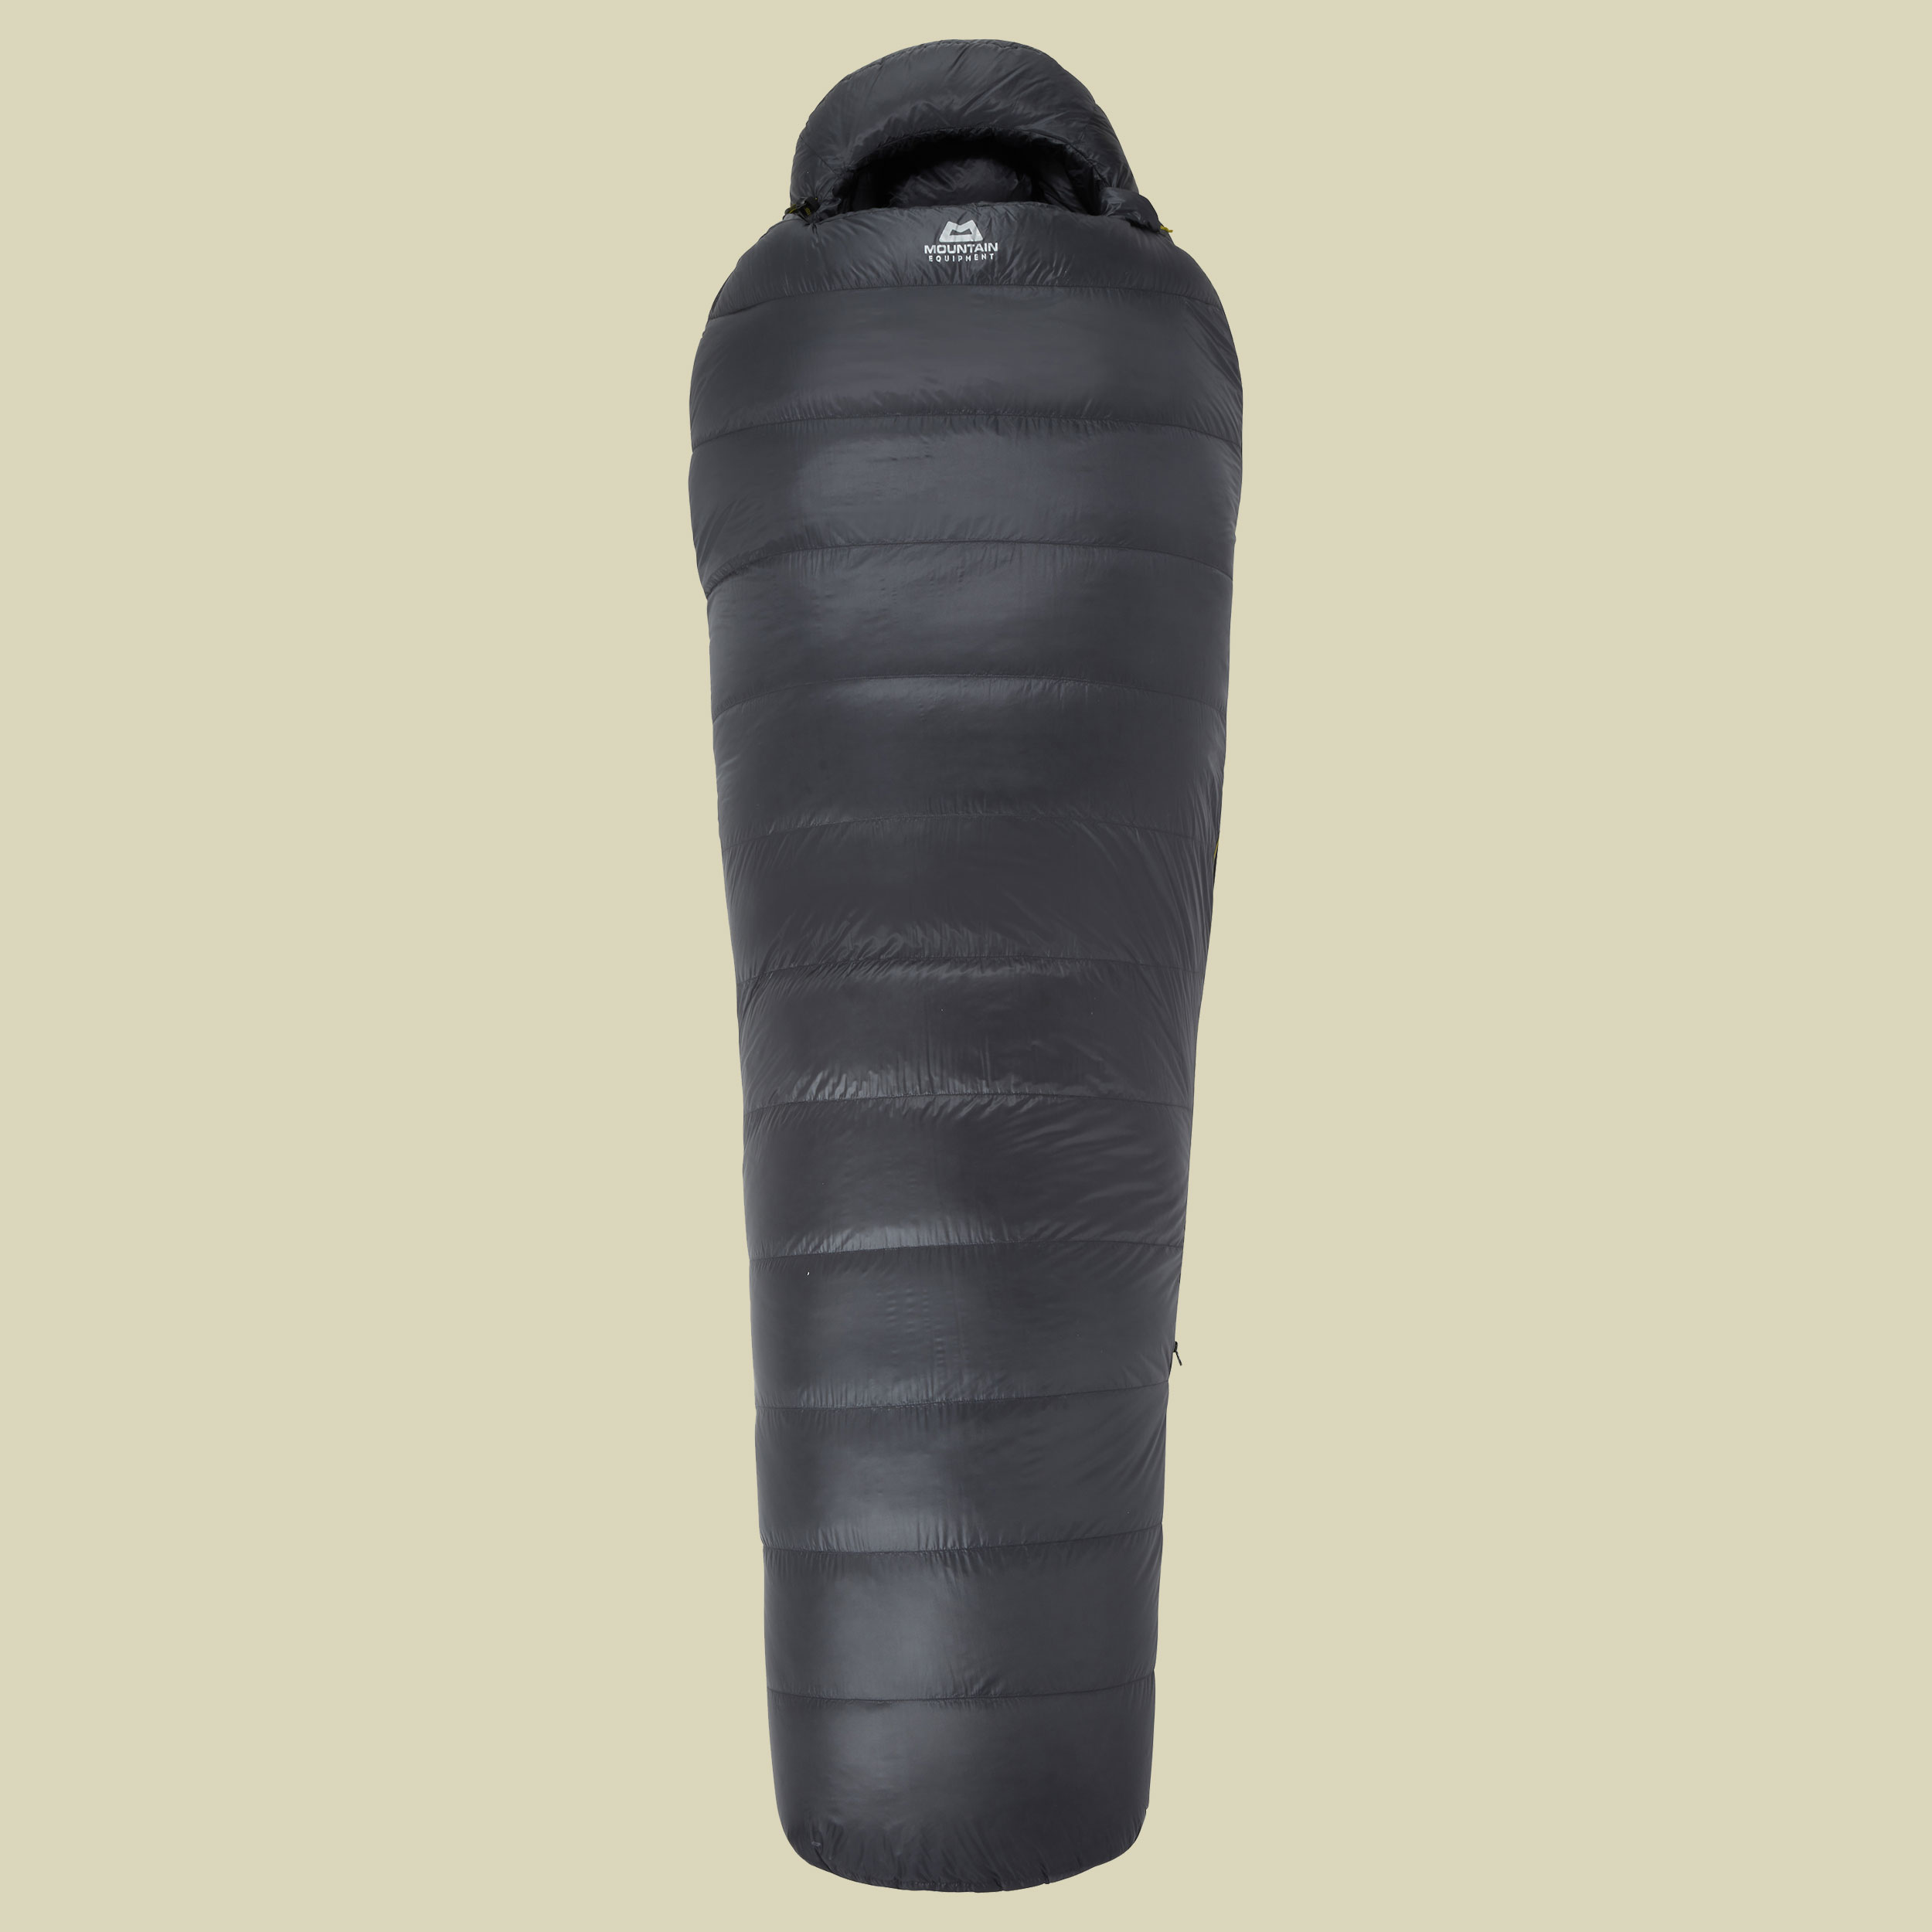 Firelite Schlafsack Körpergröße 185 cm cm ombre blue,Schlafsack Reissverschluss links